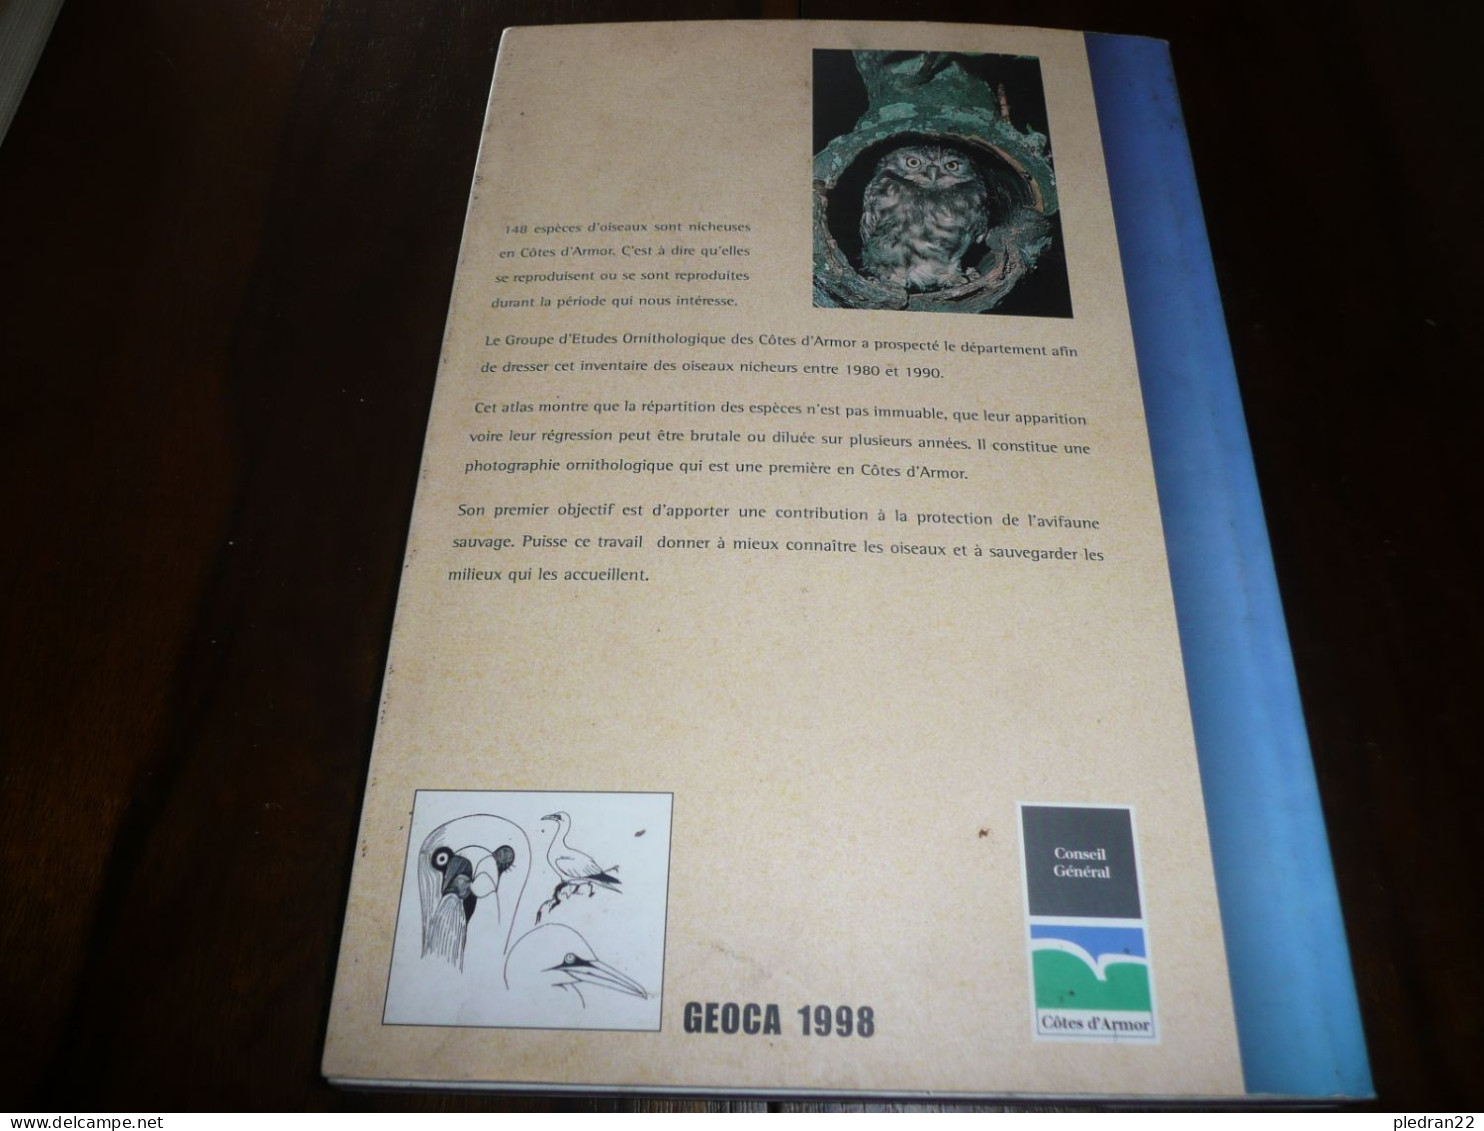 BRETAGNE OISEAUX NICHEURS DES COTES D'ARMOR ORNITHOLOGIE 148 ESPECES ENTRE 1980 ET 1990 GEOCA 1998 - Bretagne